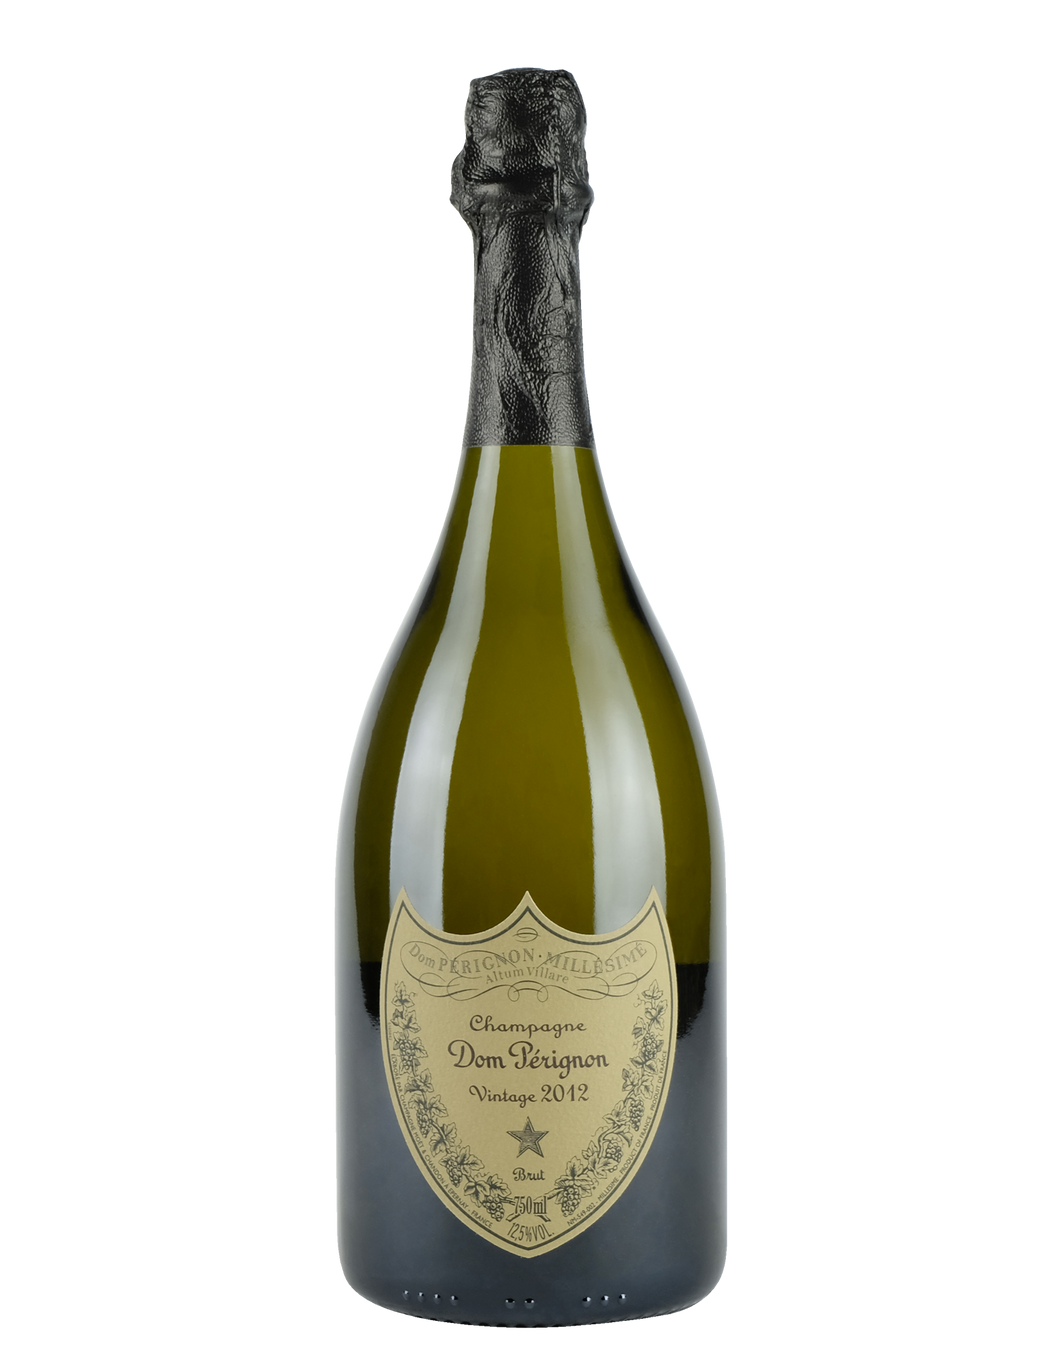 Champagne Brut Vintage 2012